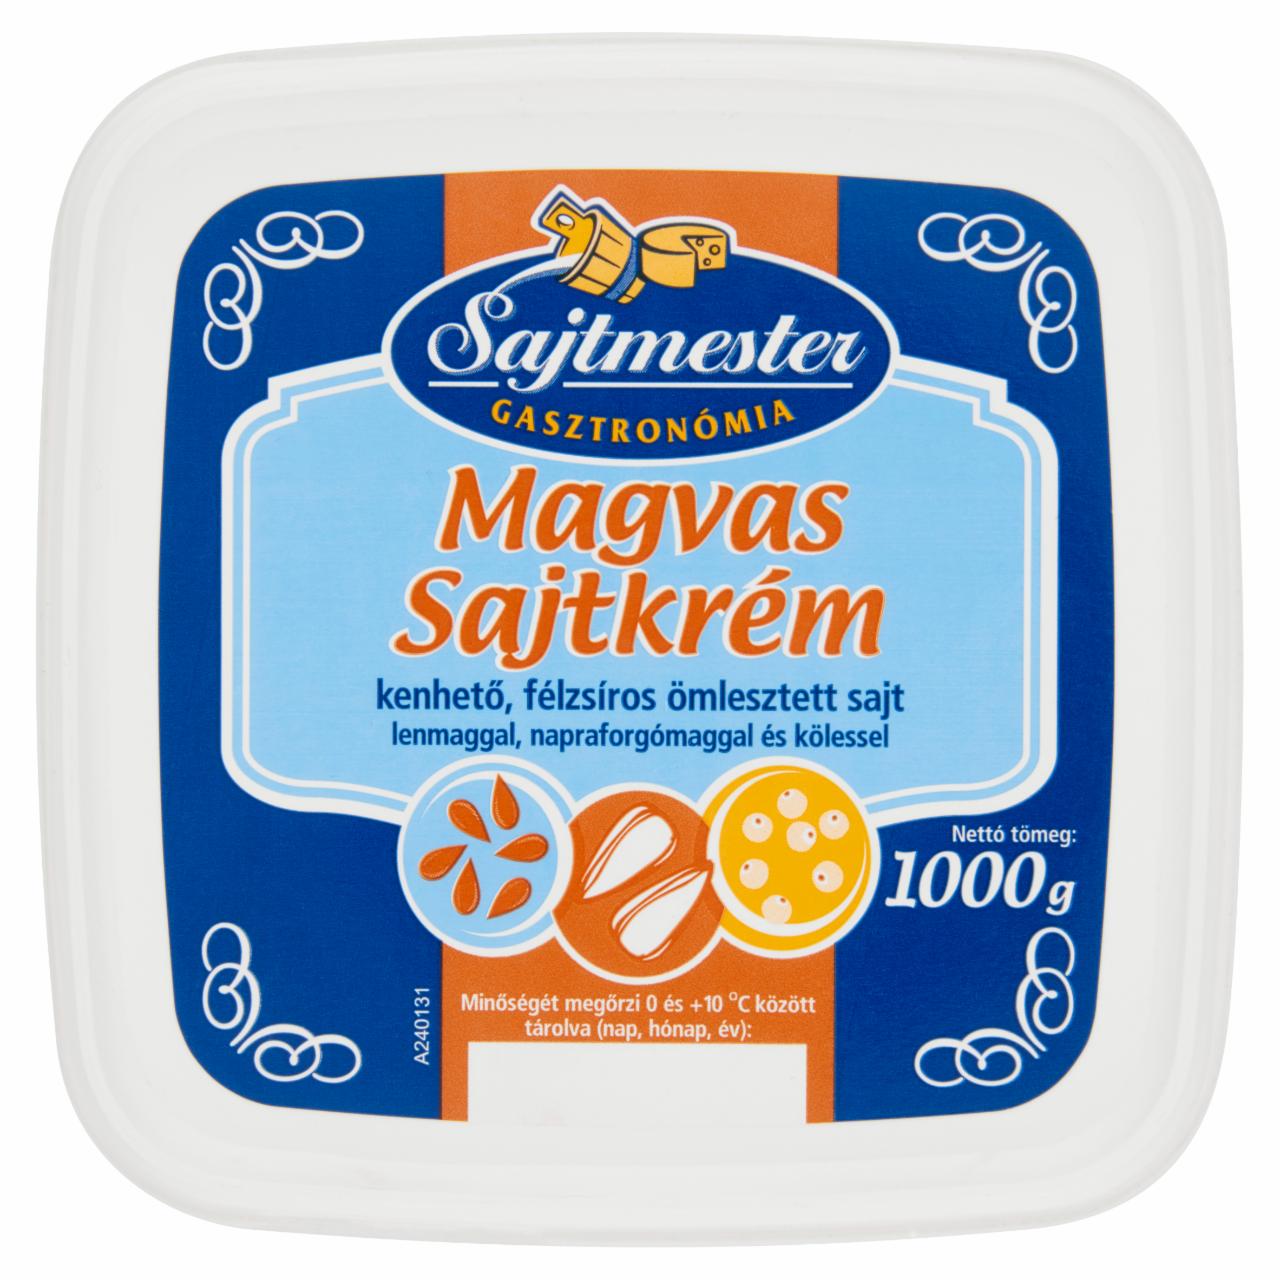 Képek - Sajtmester félzsíros magvas sajtkrém 1000 g